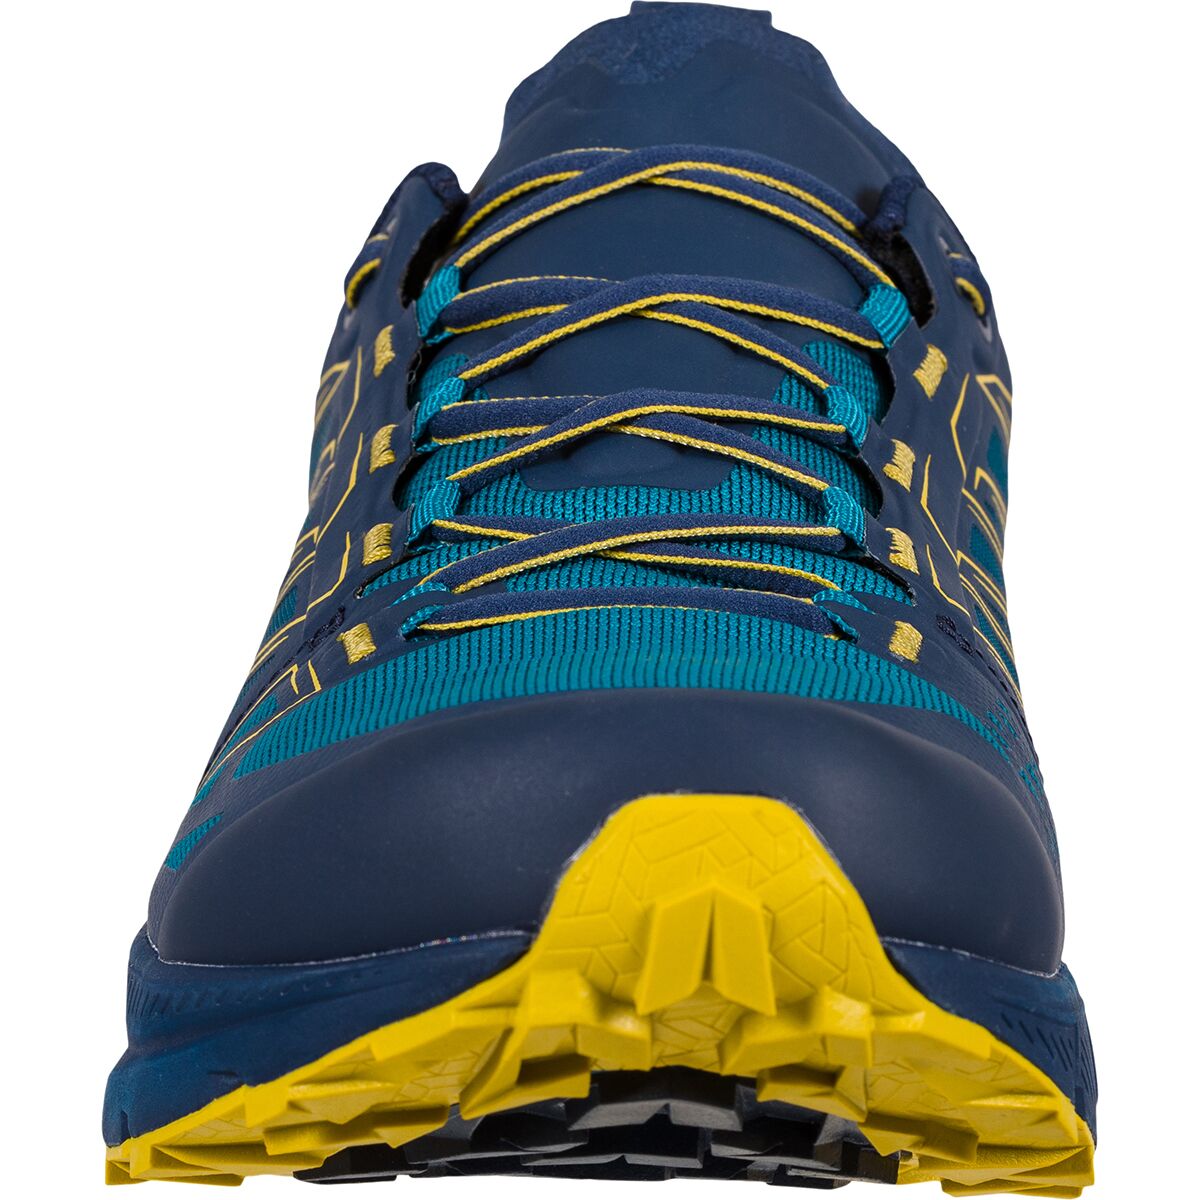 La Sportiva Jackal GTX Trail Running Shoe - Men's - Footwear